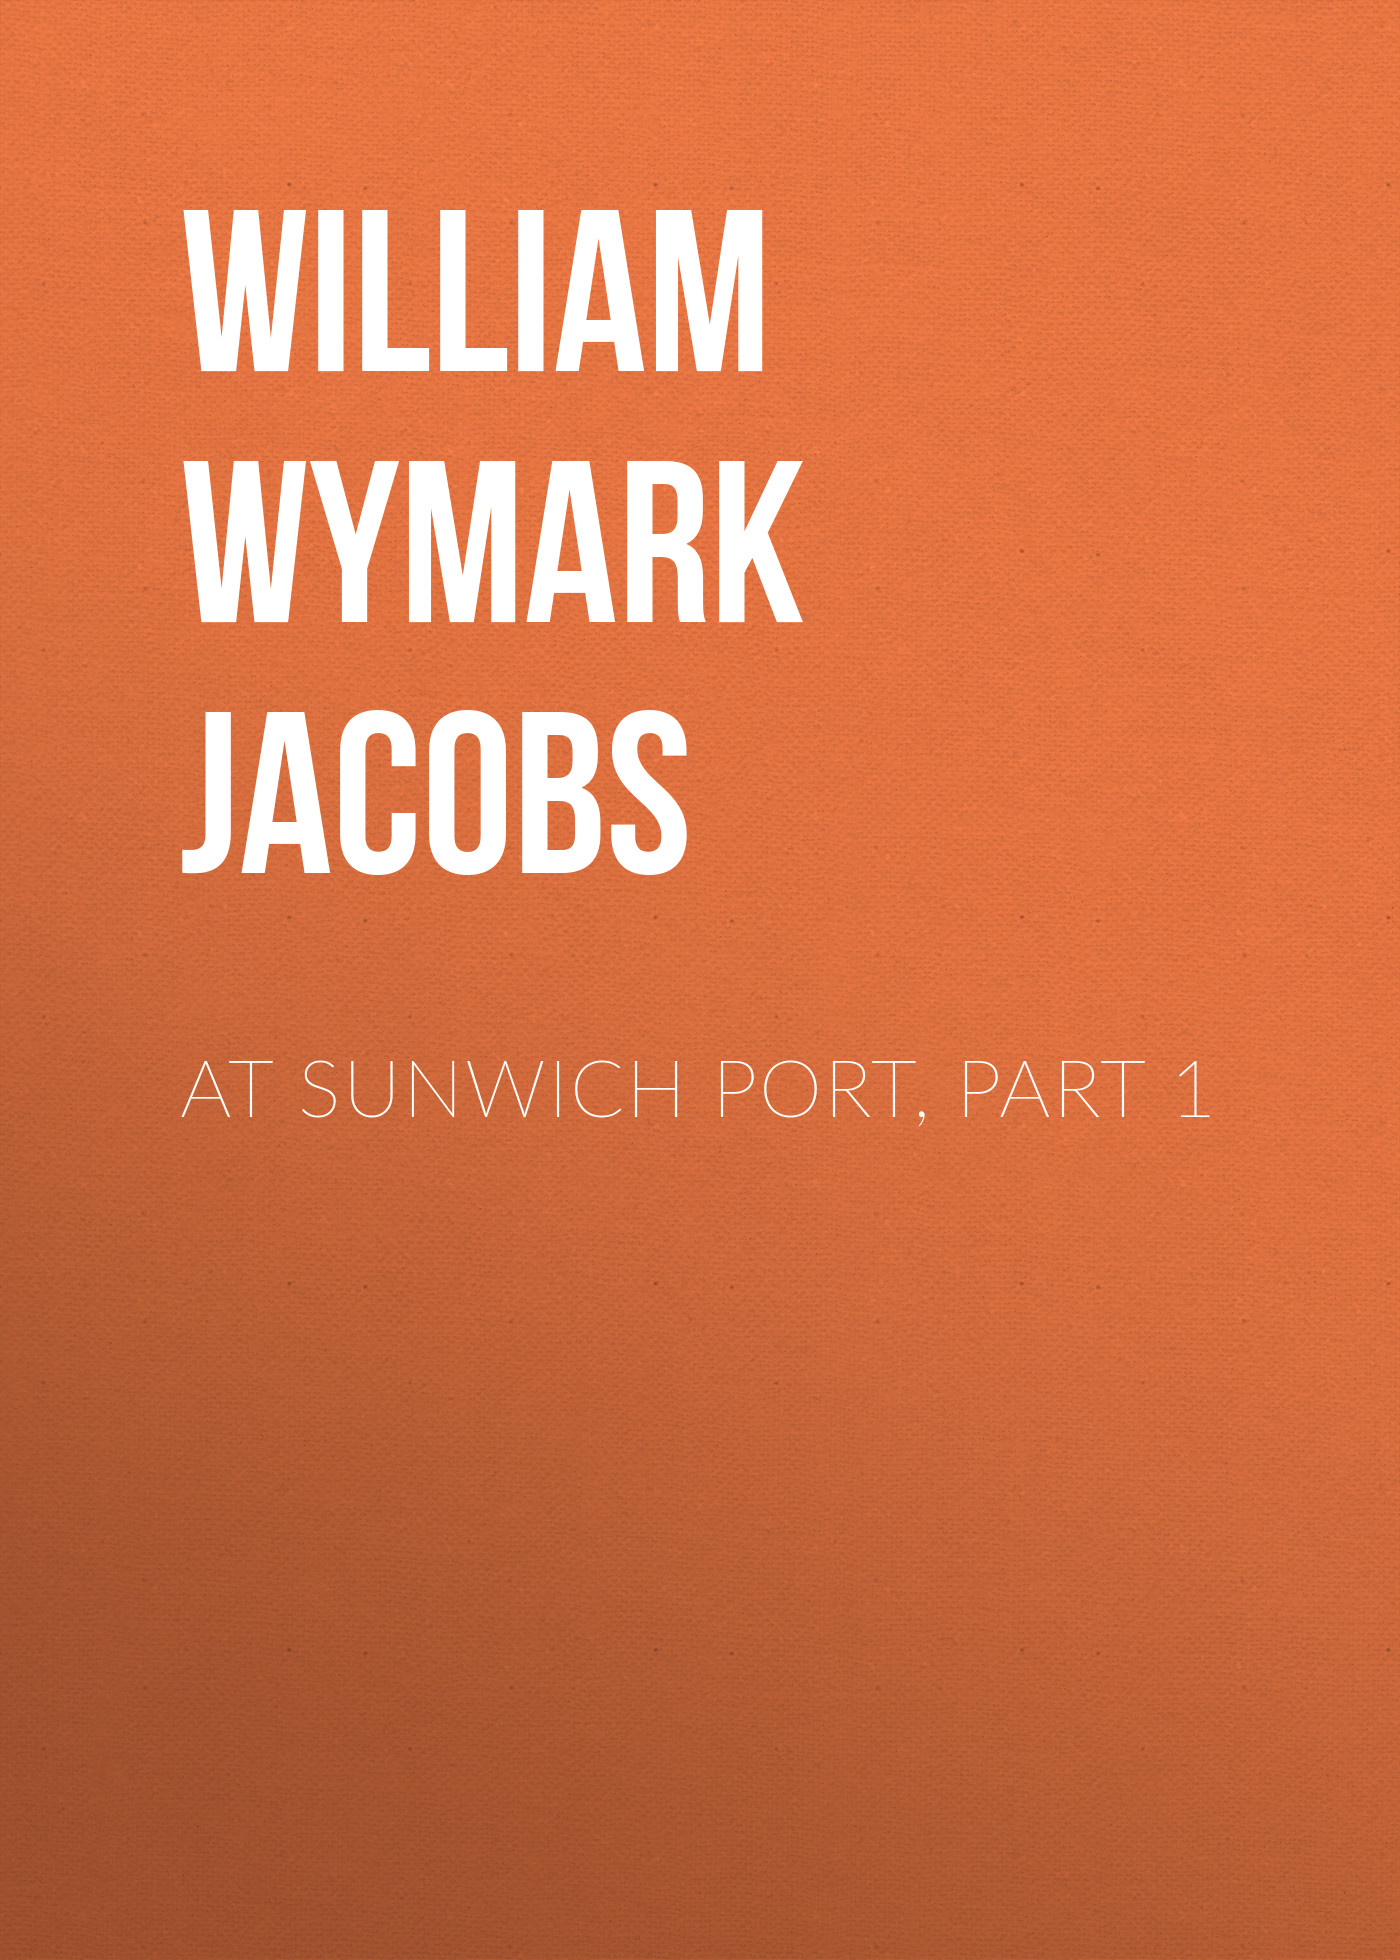 Книга At Sunwich Port, Part 1 из серии , созданная William Wymark Jacobs, может относится к жанру Зарубежная классика, Зарубежная старинная литература. Стоимость электронной книги At Sunwich Port, Part 1 с идентификатором 34844238 составляет 0 руб.